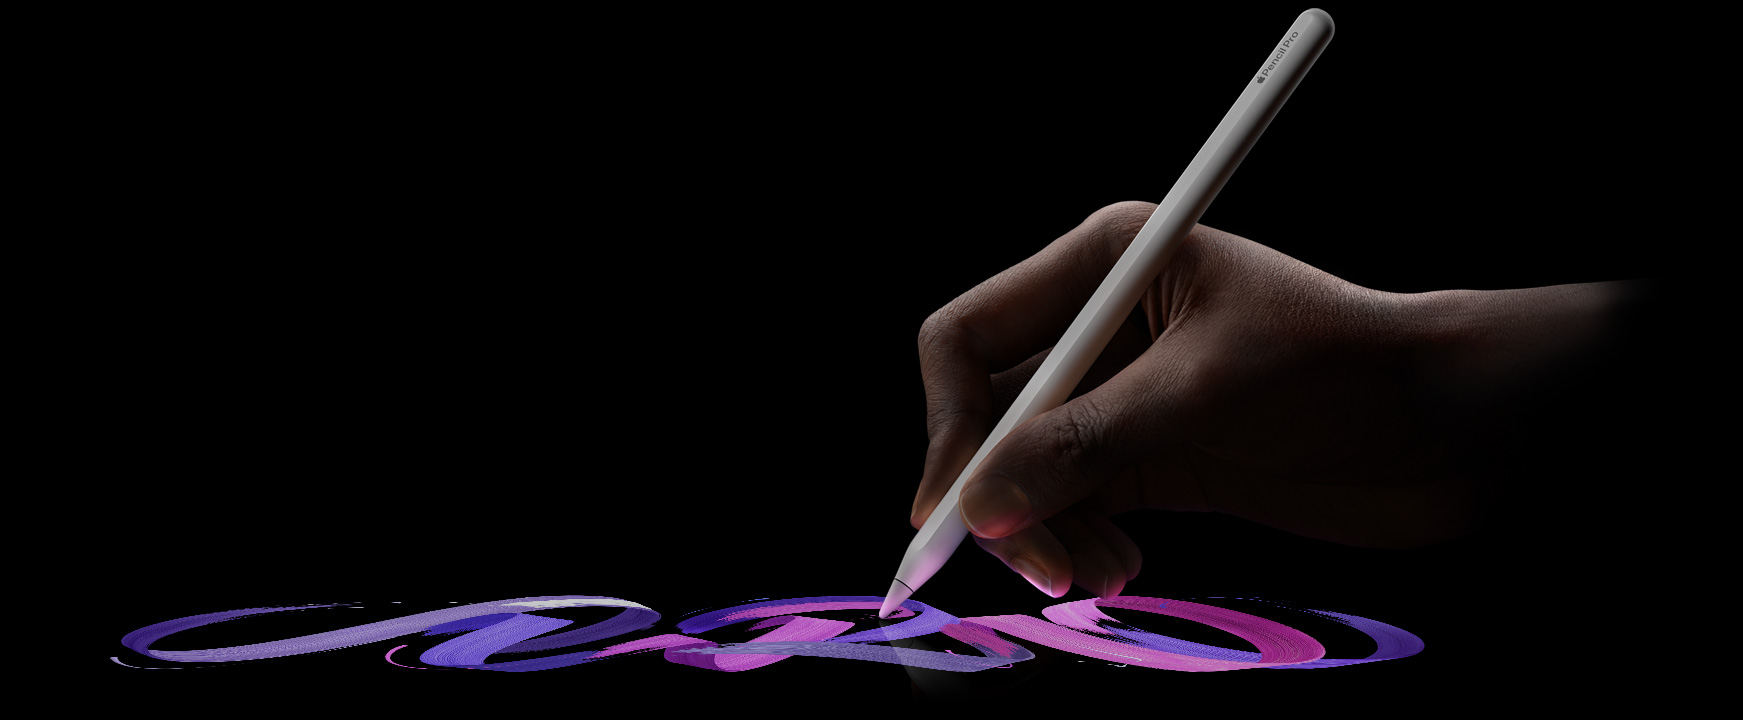 ผู้ใช้ถือ Apple Pencil Pro ในมือ แล้วลากเป็นลายเส้นของแปรงสีสันสดใส